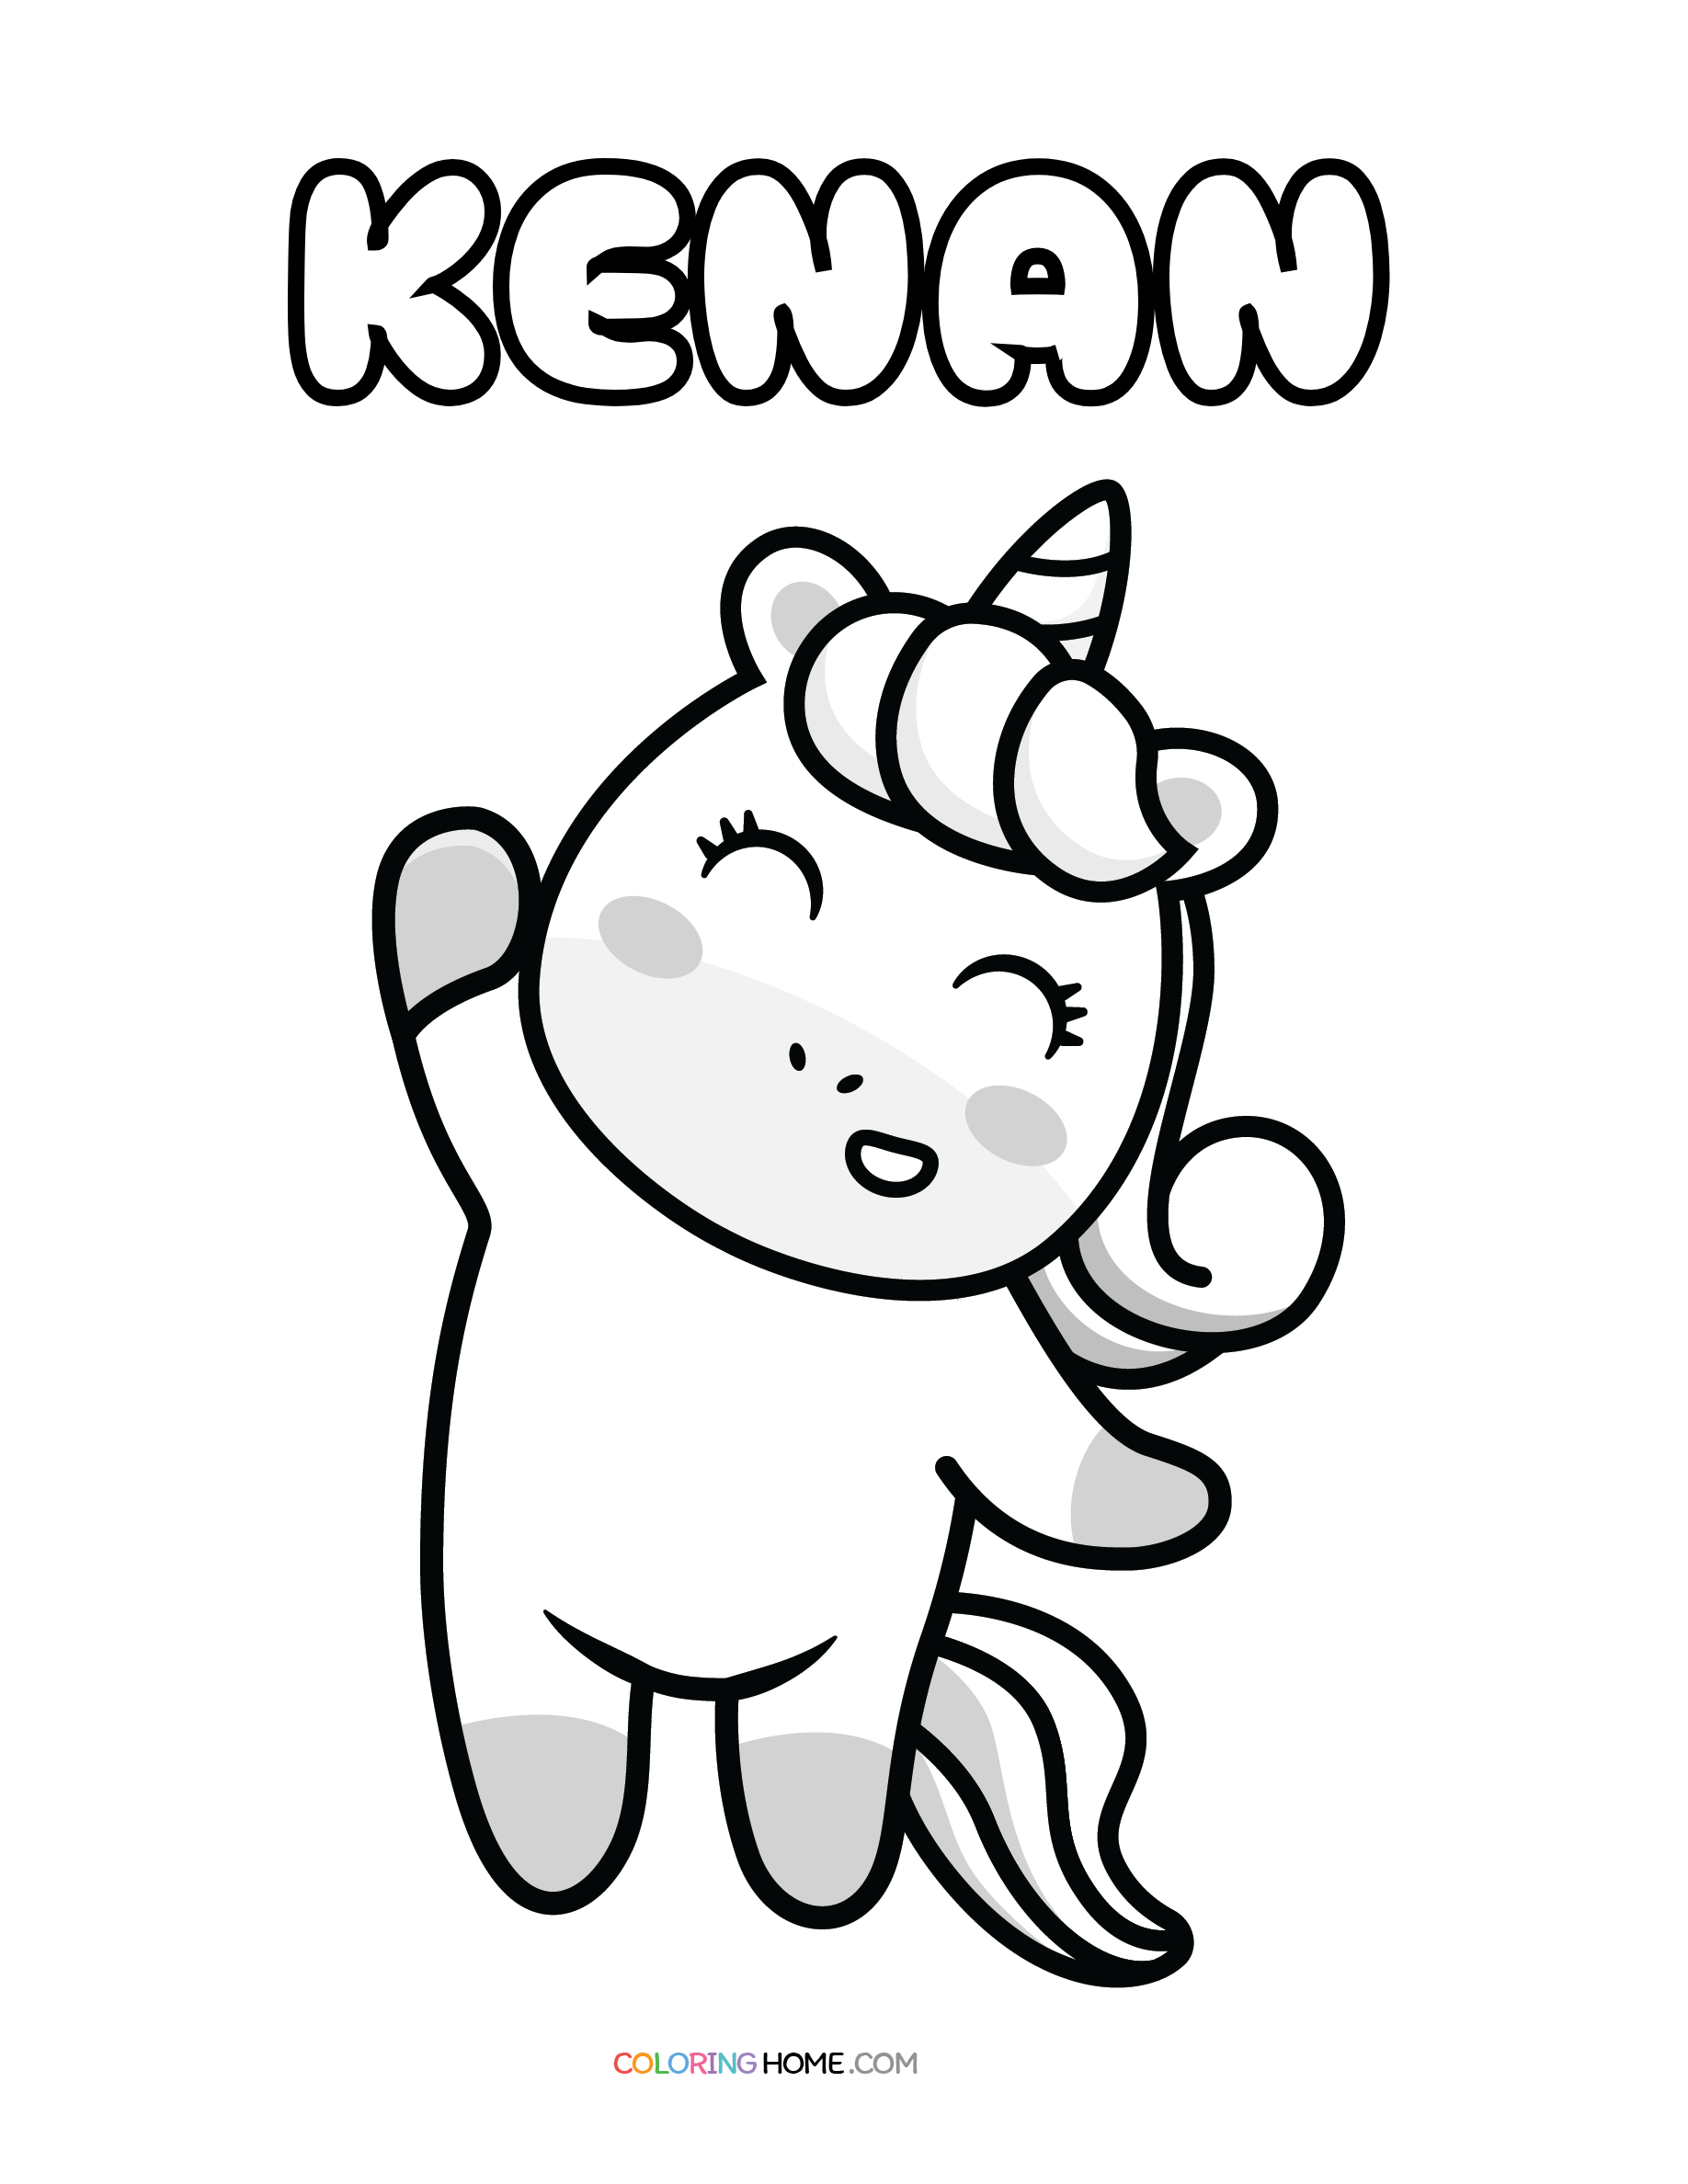 Kenan unicorn coloring page